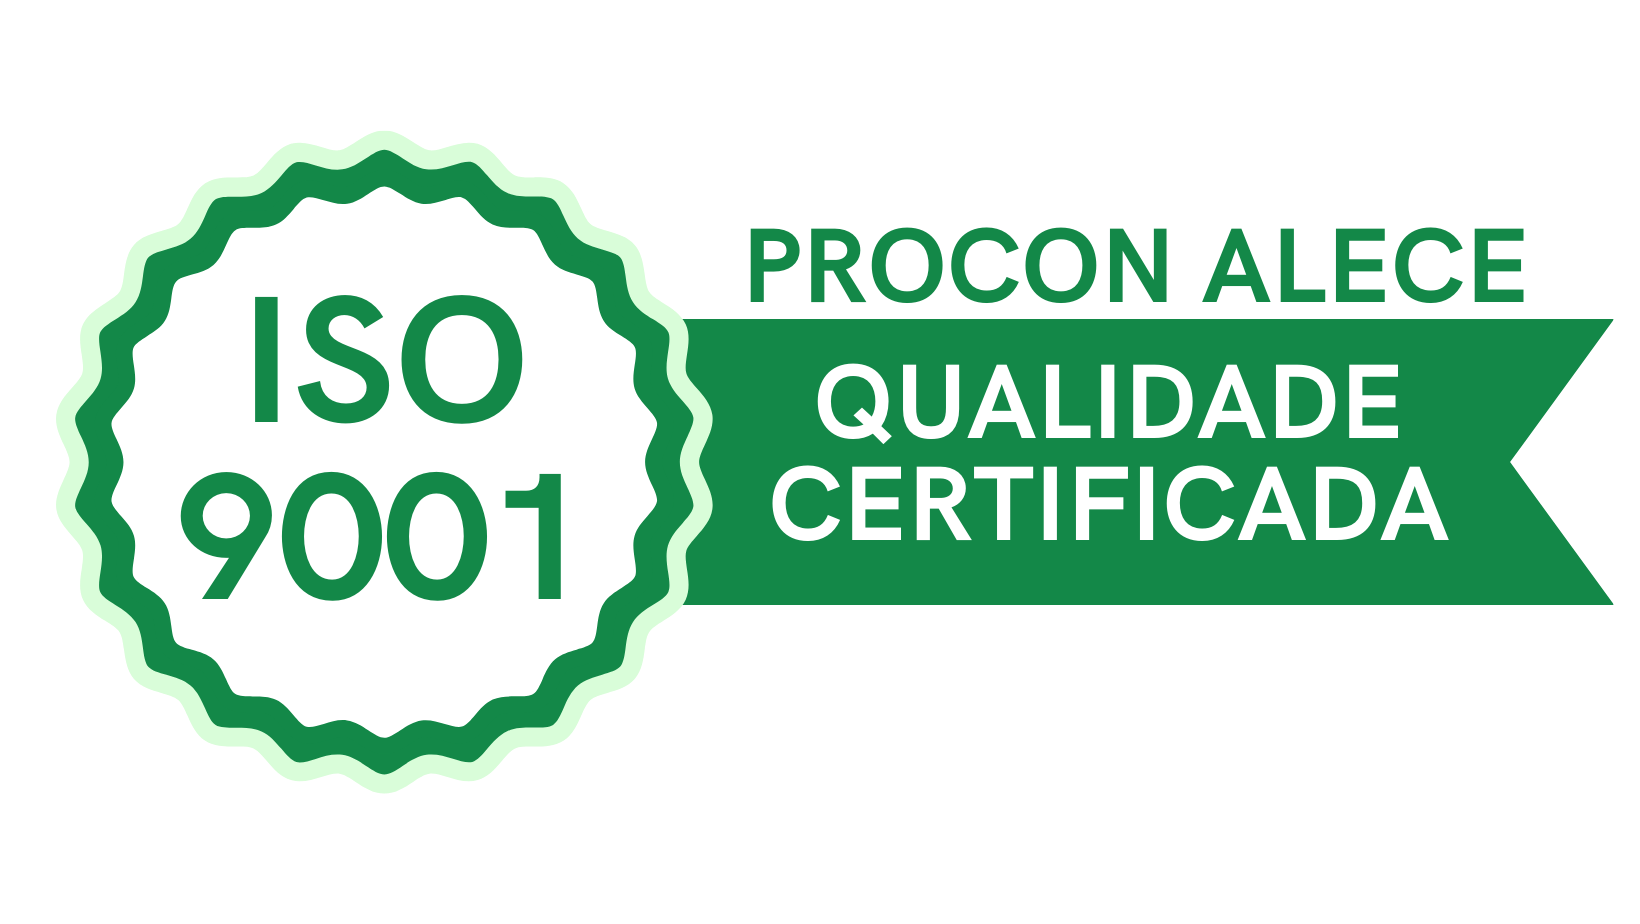 Procon Alece ISO 9001